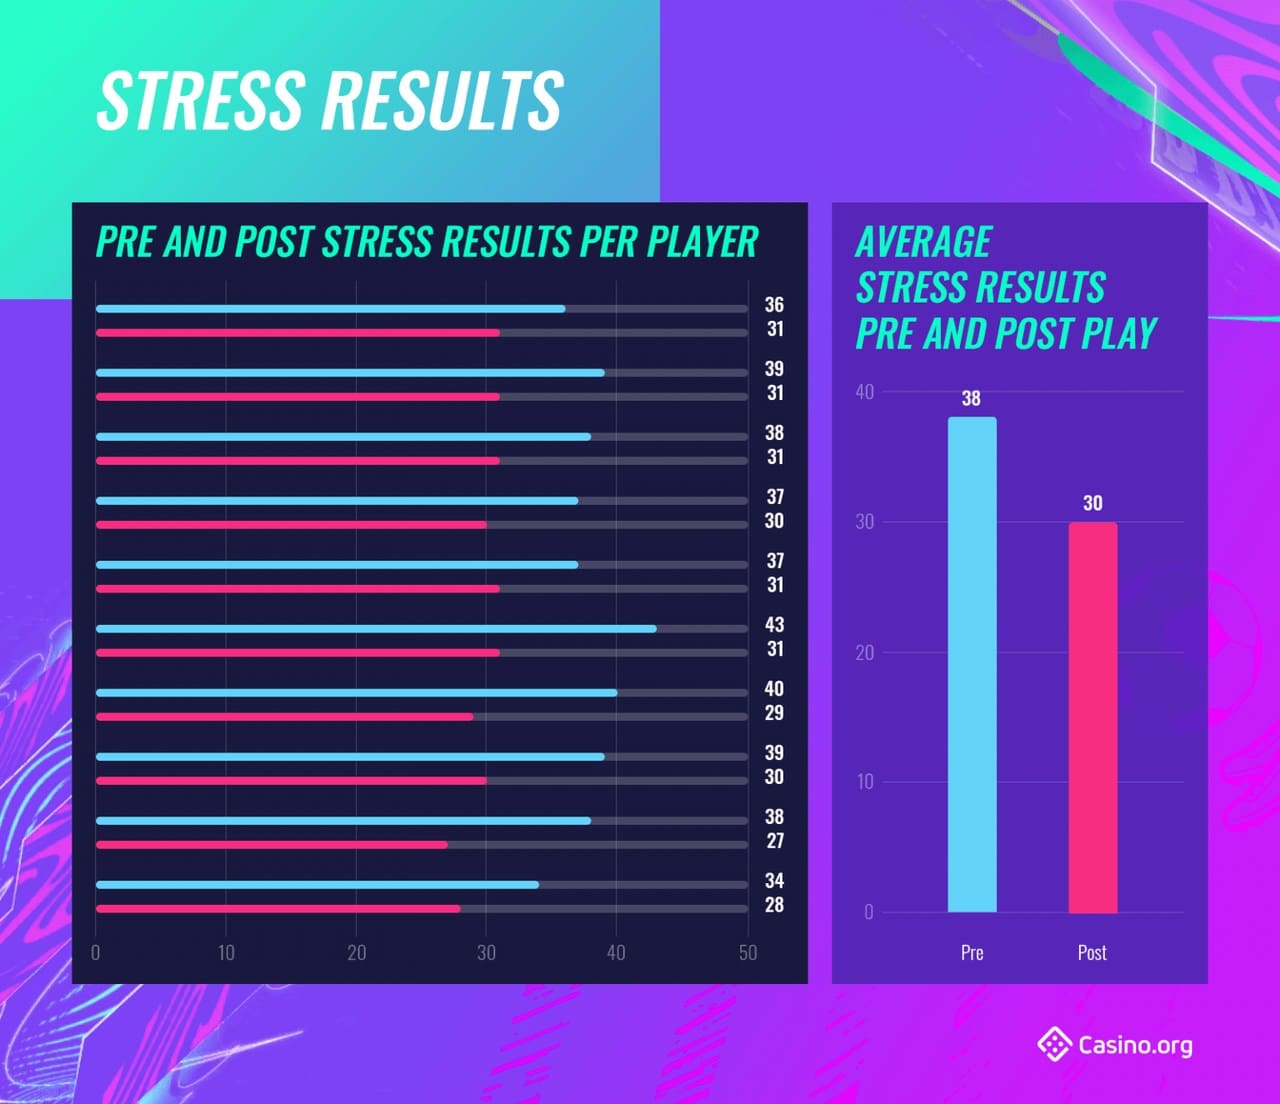 Jogar FIFA pode reduzir níveis de estresse e ansiedade, revela estudo